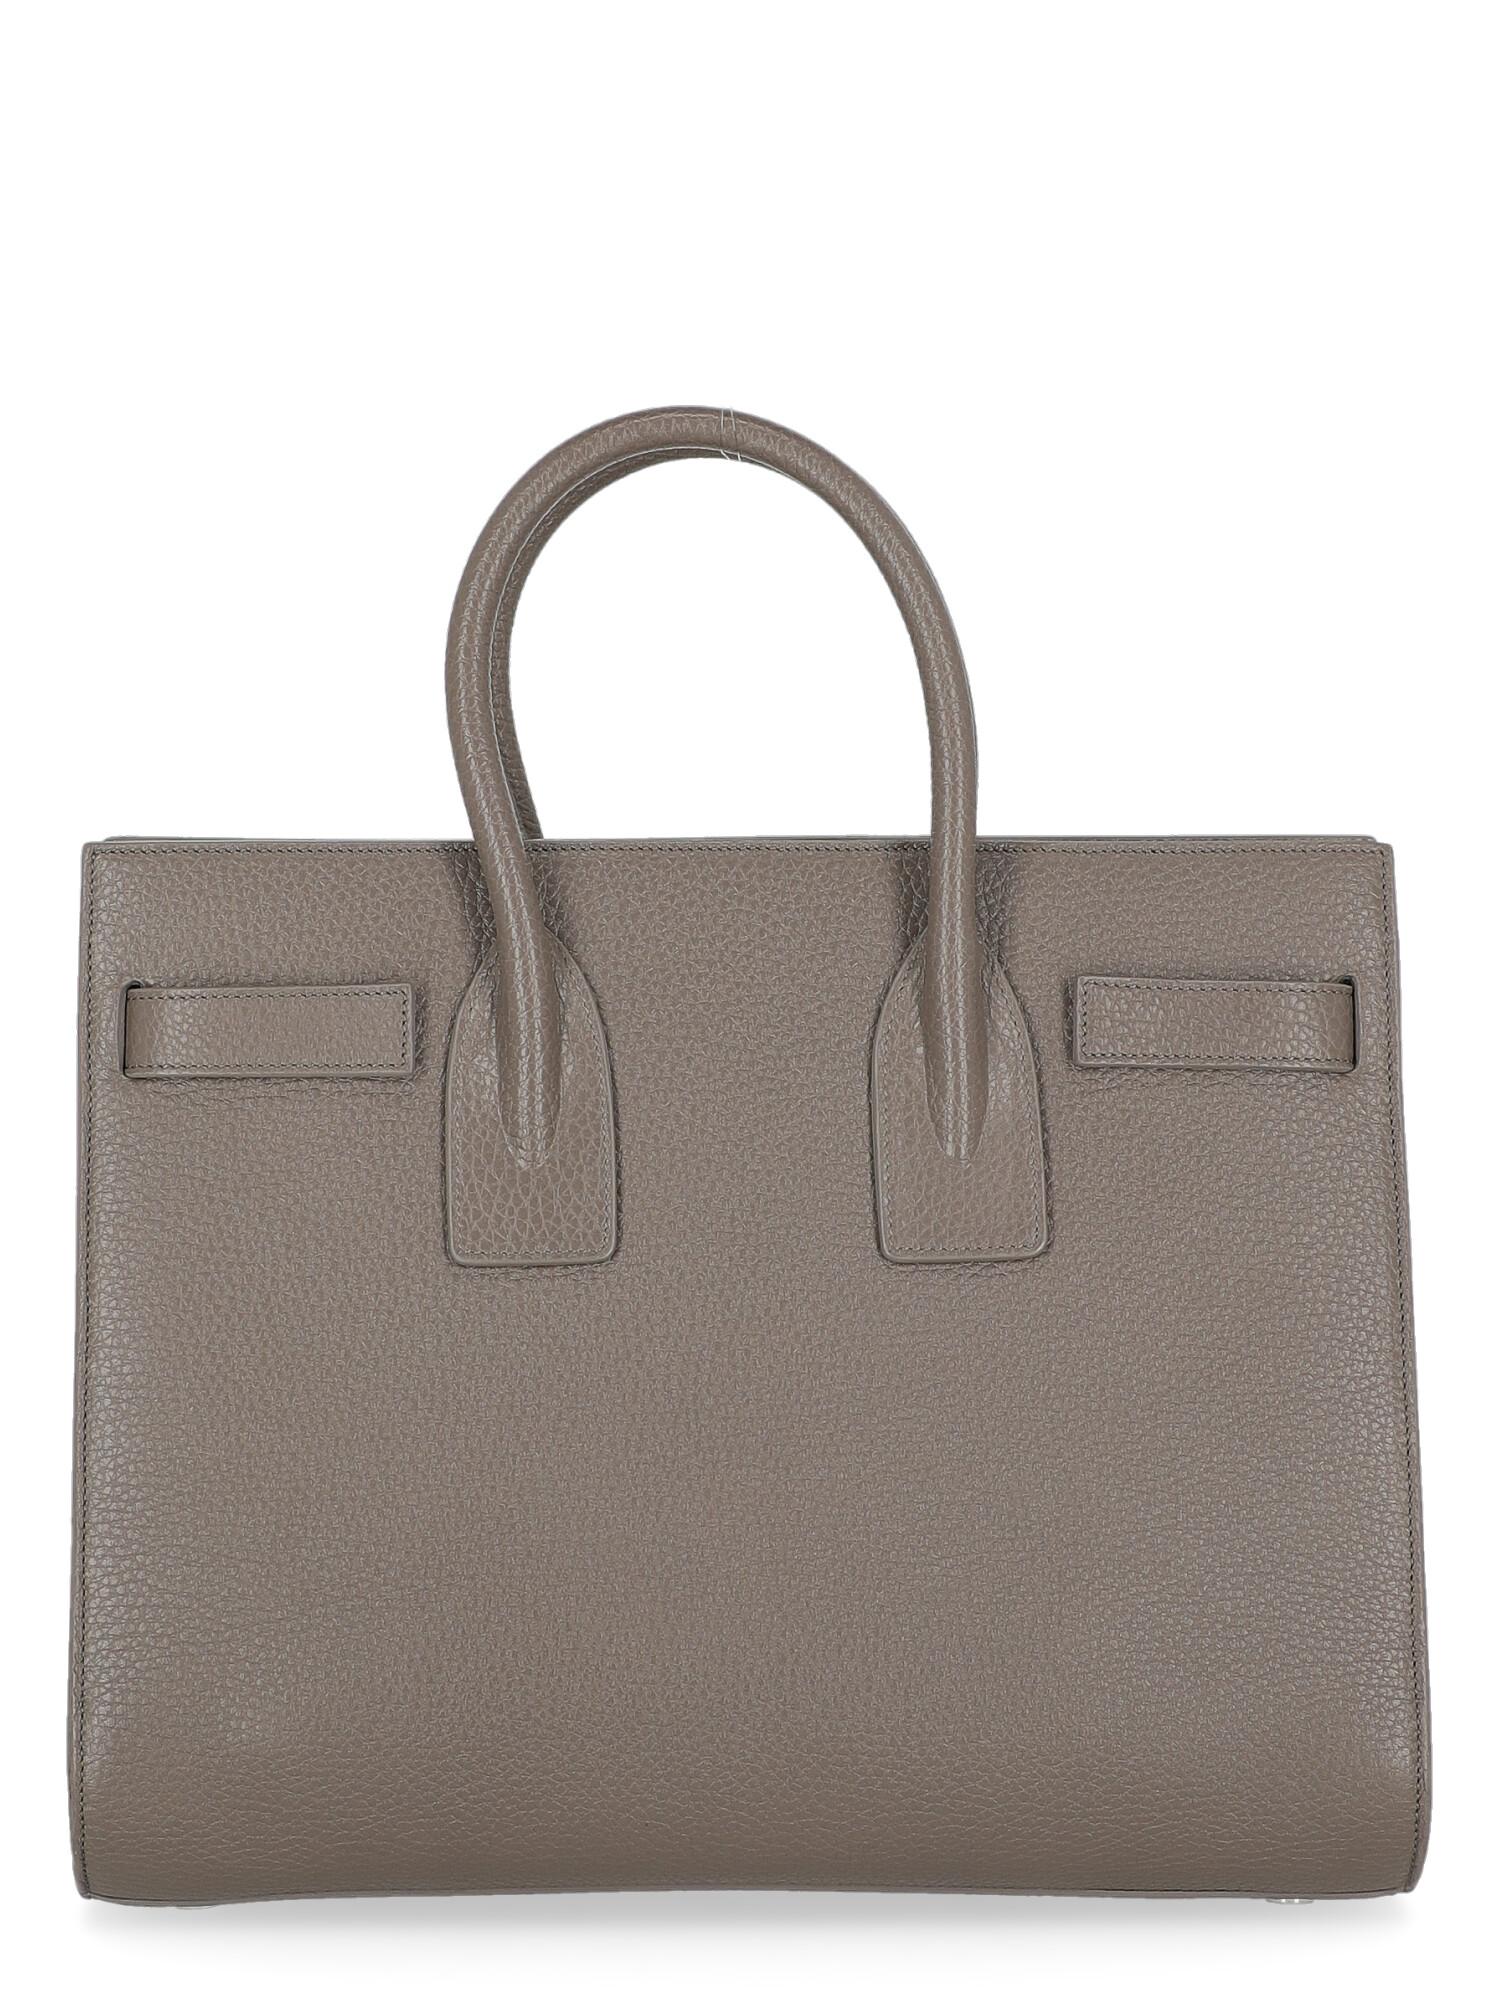 Saint Laurent  Women   Handbags  Sac De Jour Grey Leather  In Good Condition For Sale In Milan, IT